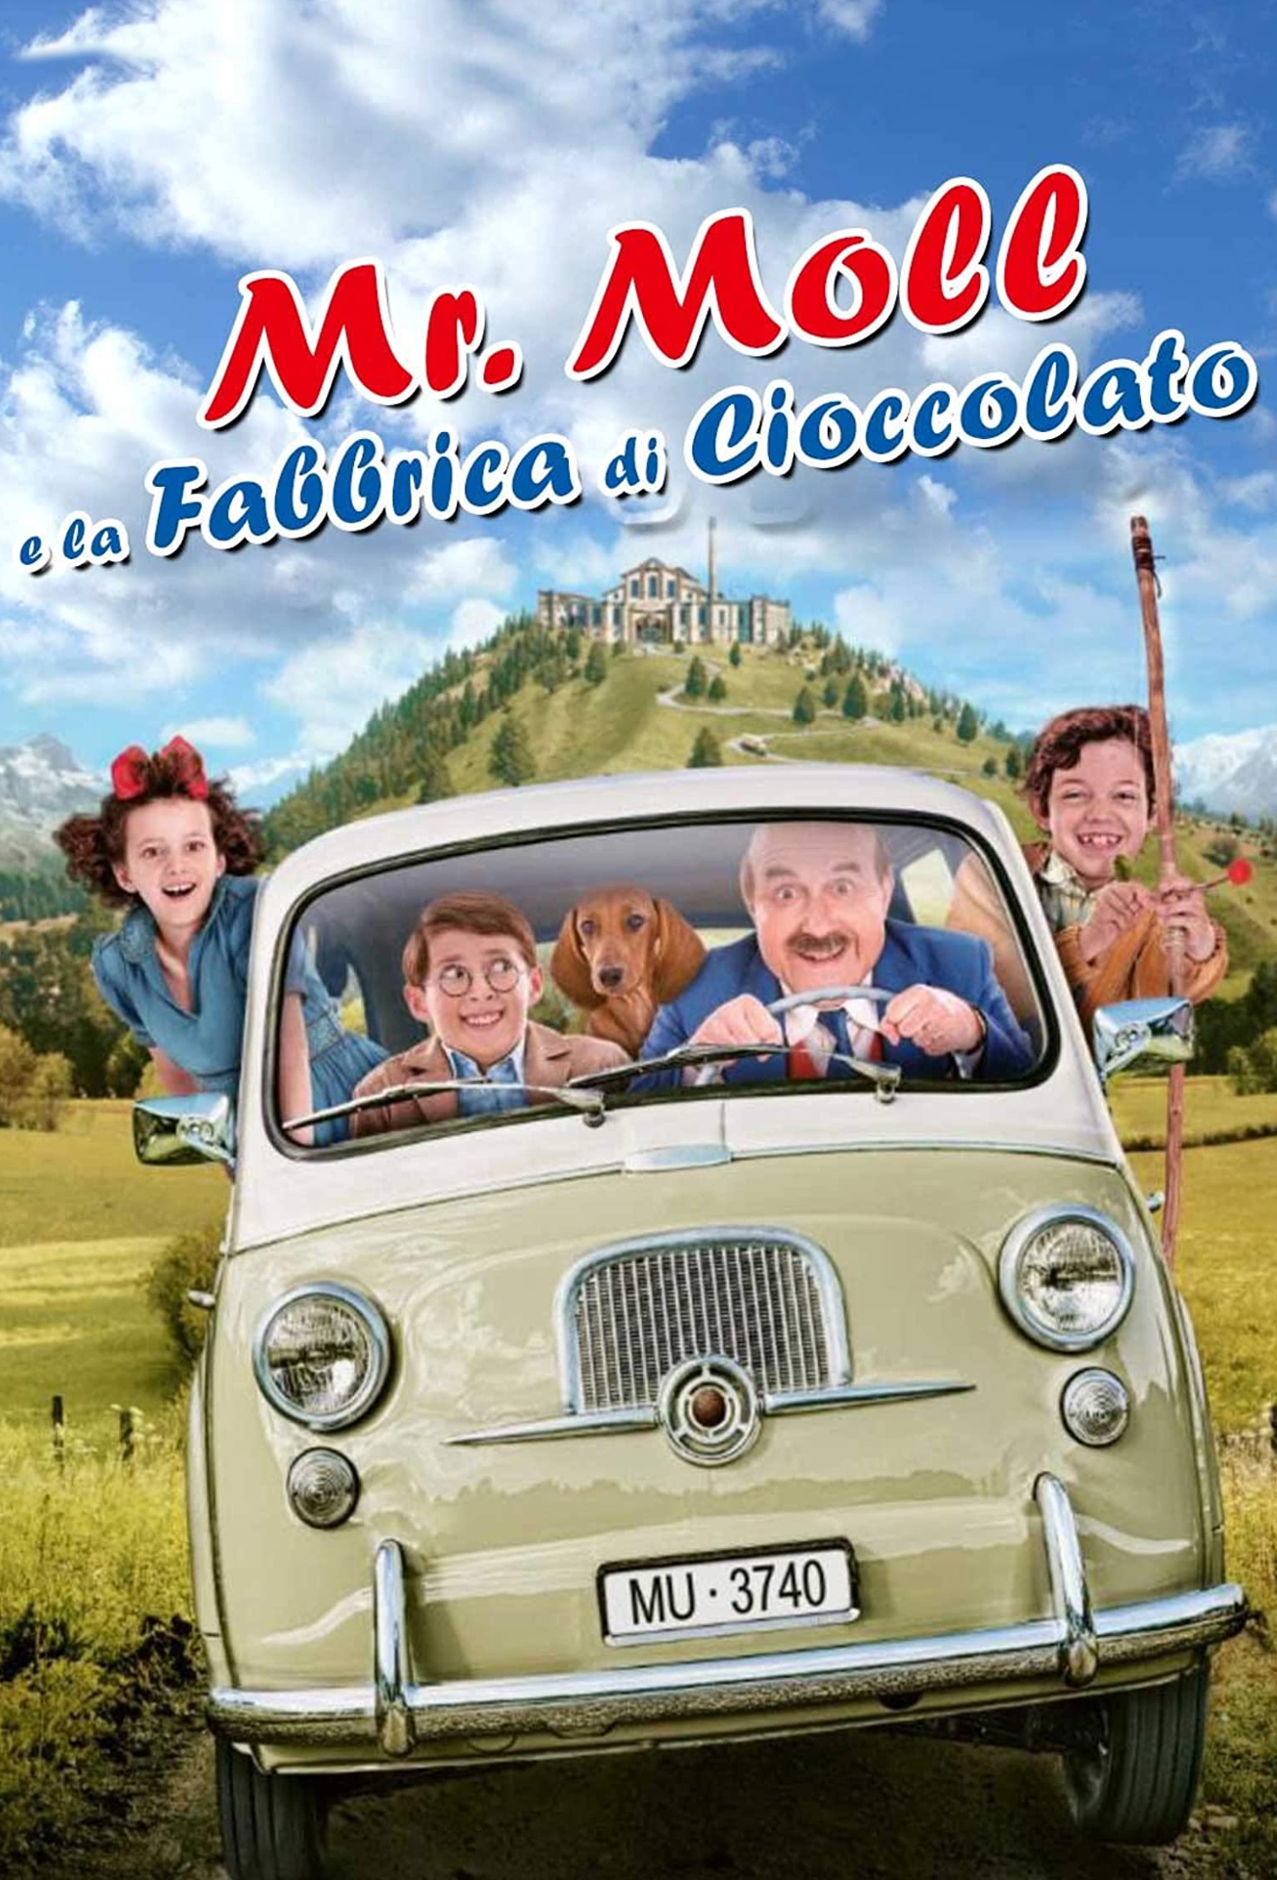 Mr. Moll e la fabbrica di cioccolato [HD] (2018)